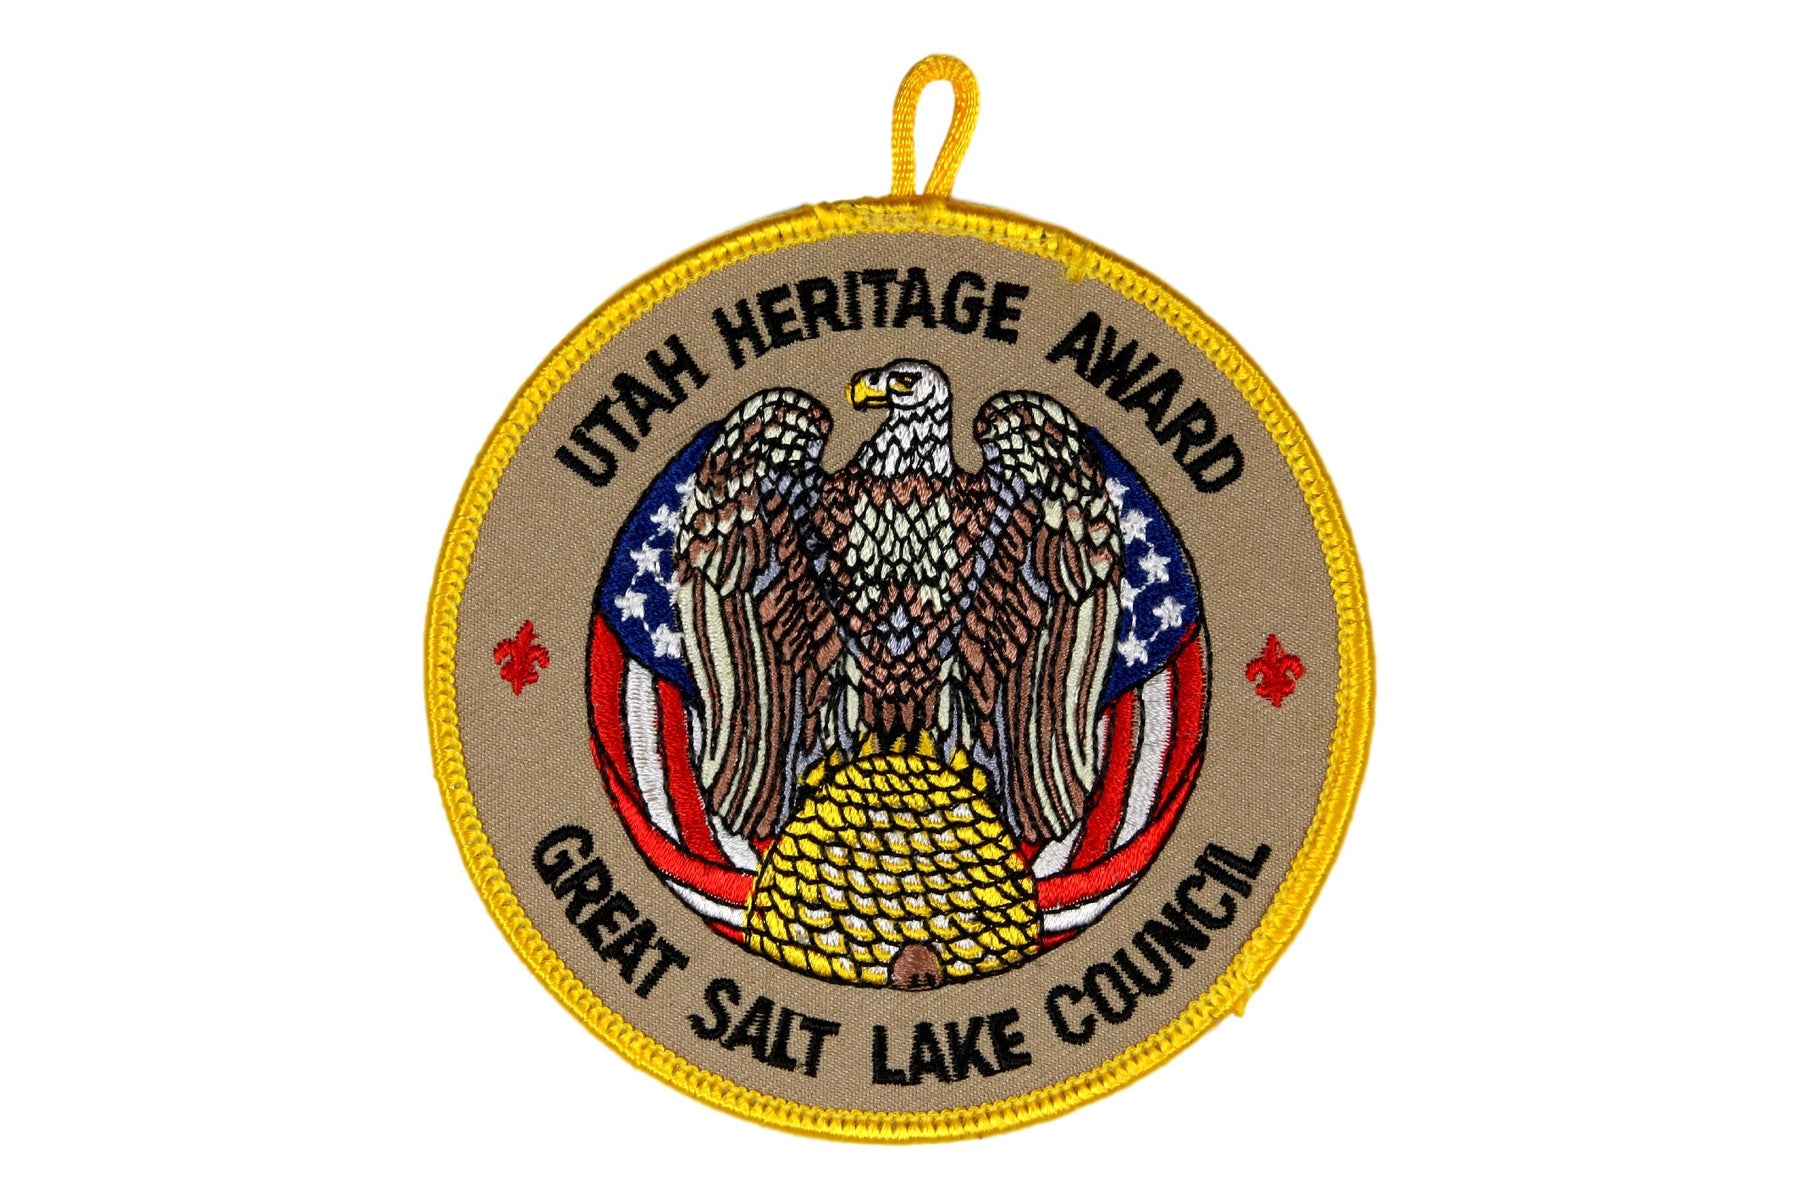 Great Salt Lake Utah Heritage Award Patch